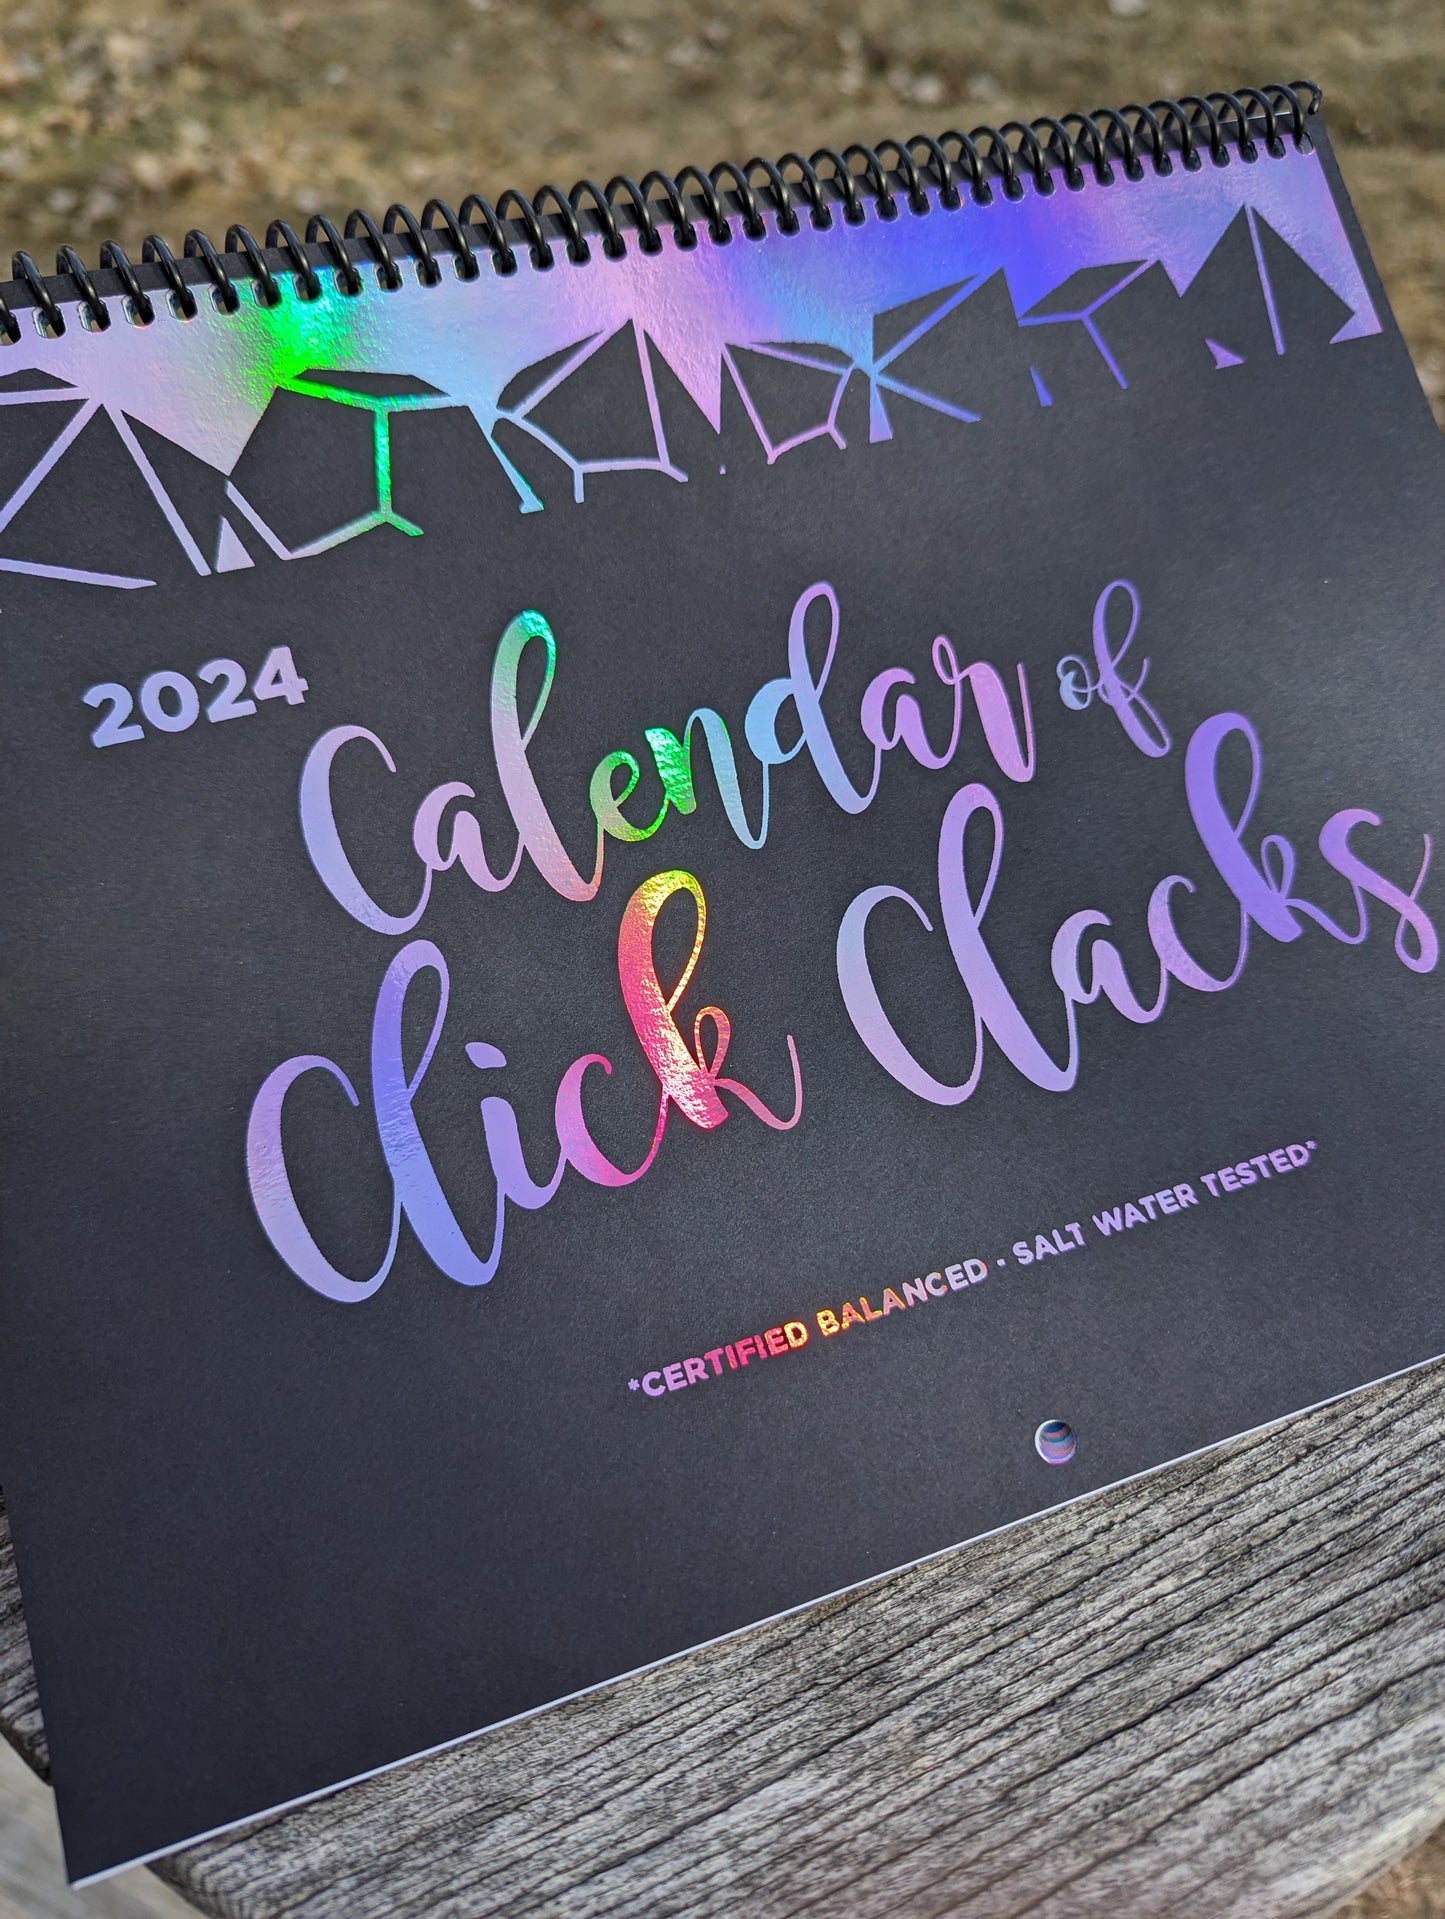 2024 Calendar of Click Clacks - Handmade Dice 12 Month Calendar